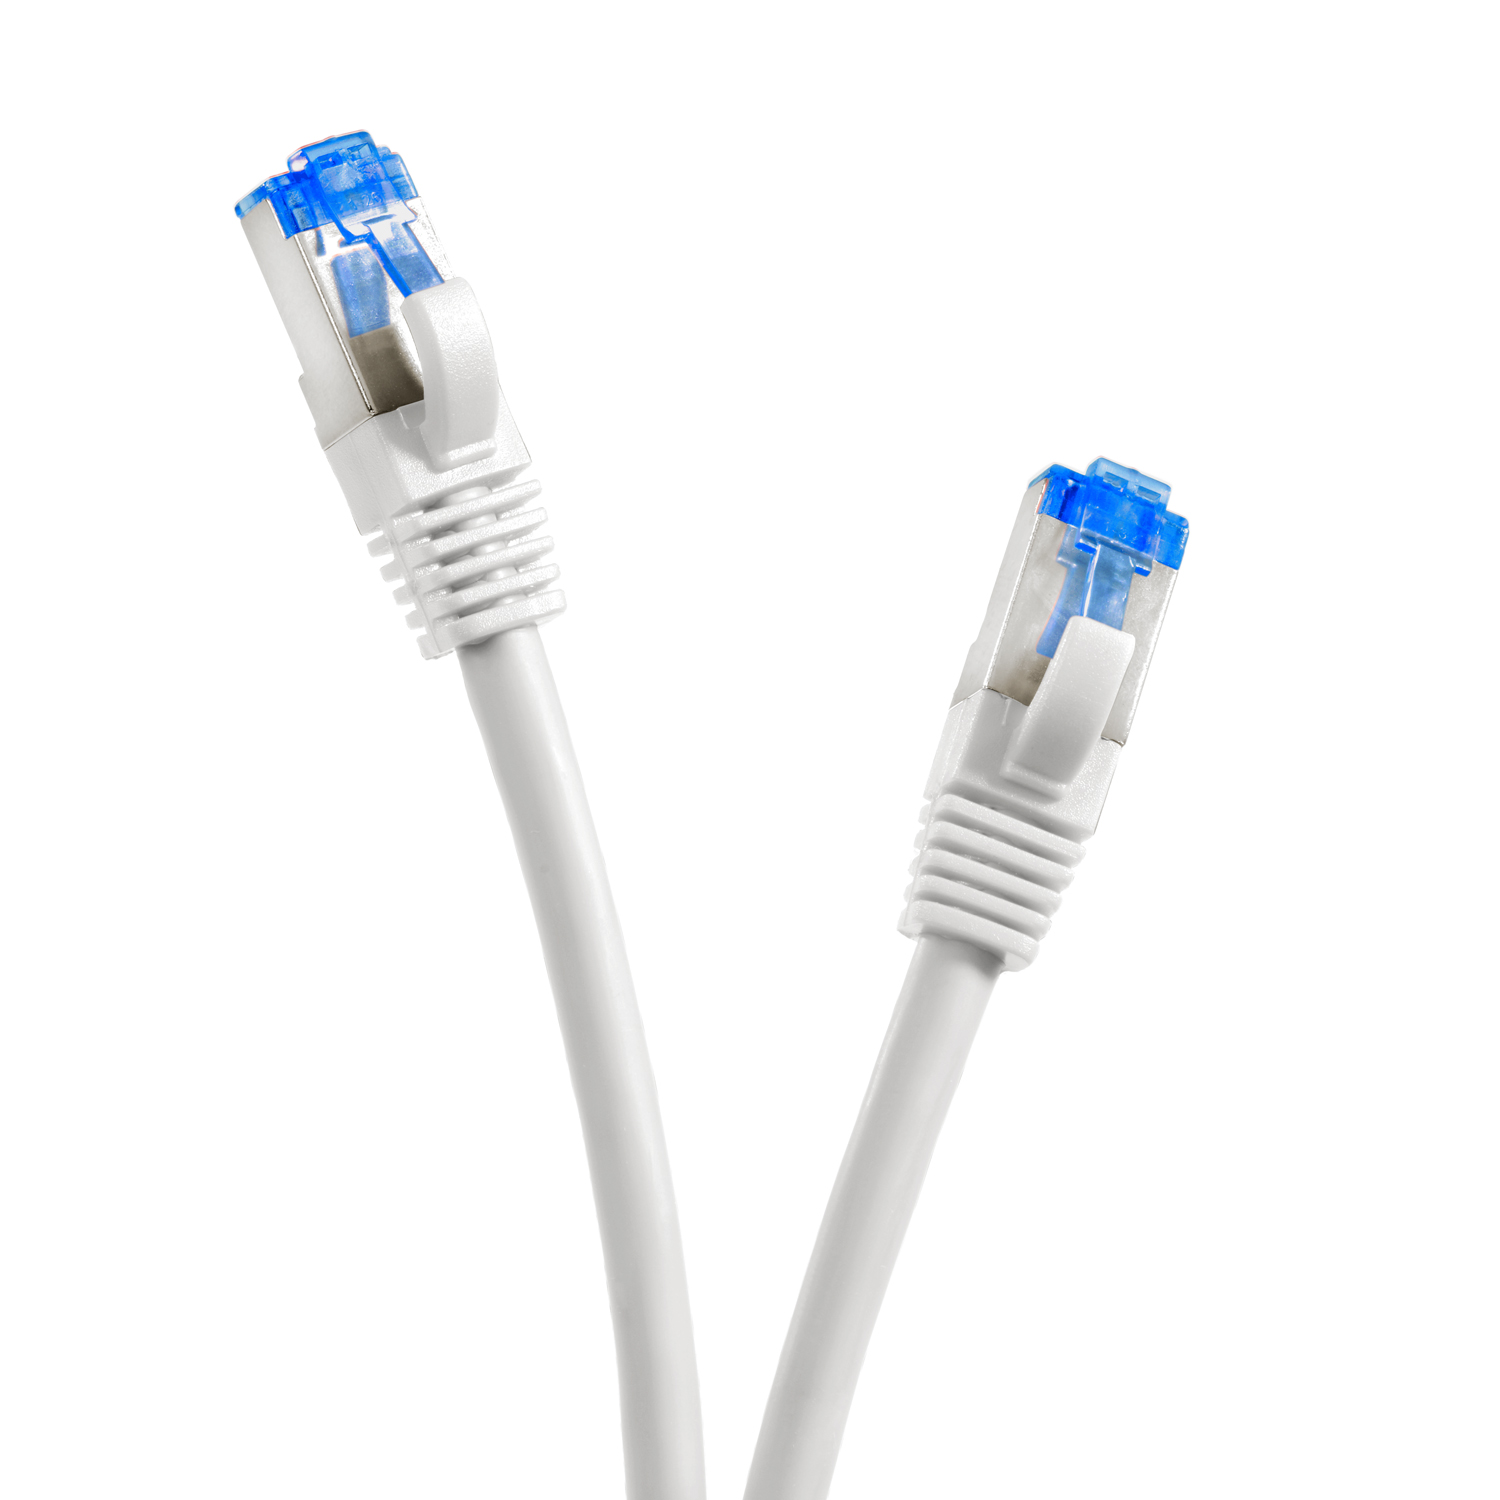 1m / Netzwerkkabel weiß, S/FTP 10GBit, m 1 TPFNET Netzwerkkabel, Patchkabel